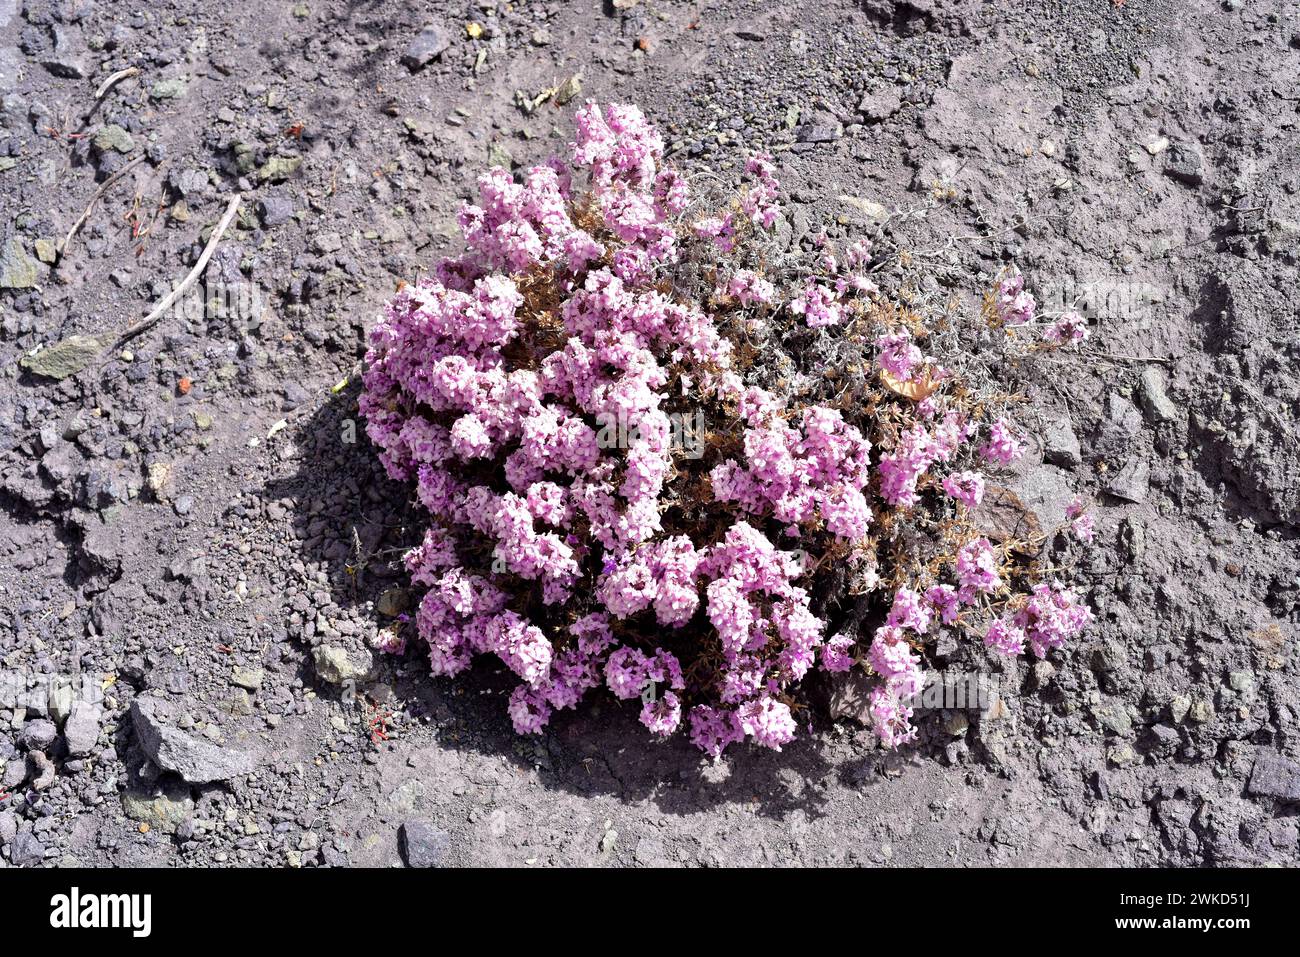 Le verveine sauvage ou mamapasankayo (Glandularia gynobasis) est un sous-arbuste originaire du Chili. Cette photo a été prise près de Putre, région d'Arica Parinacota, Chili. Banque D'Images